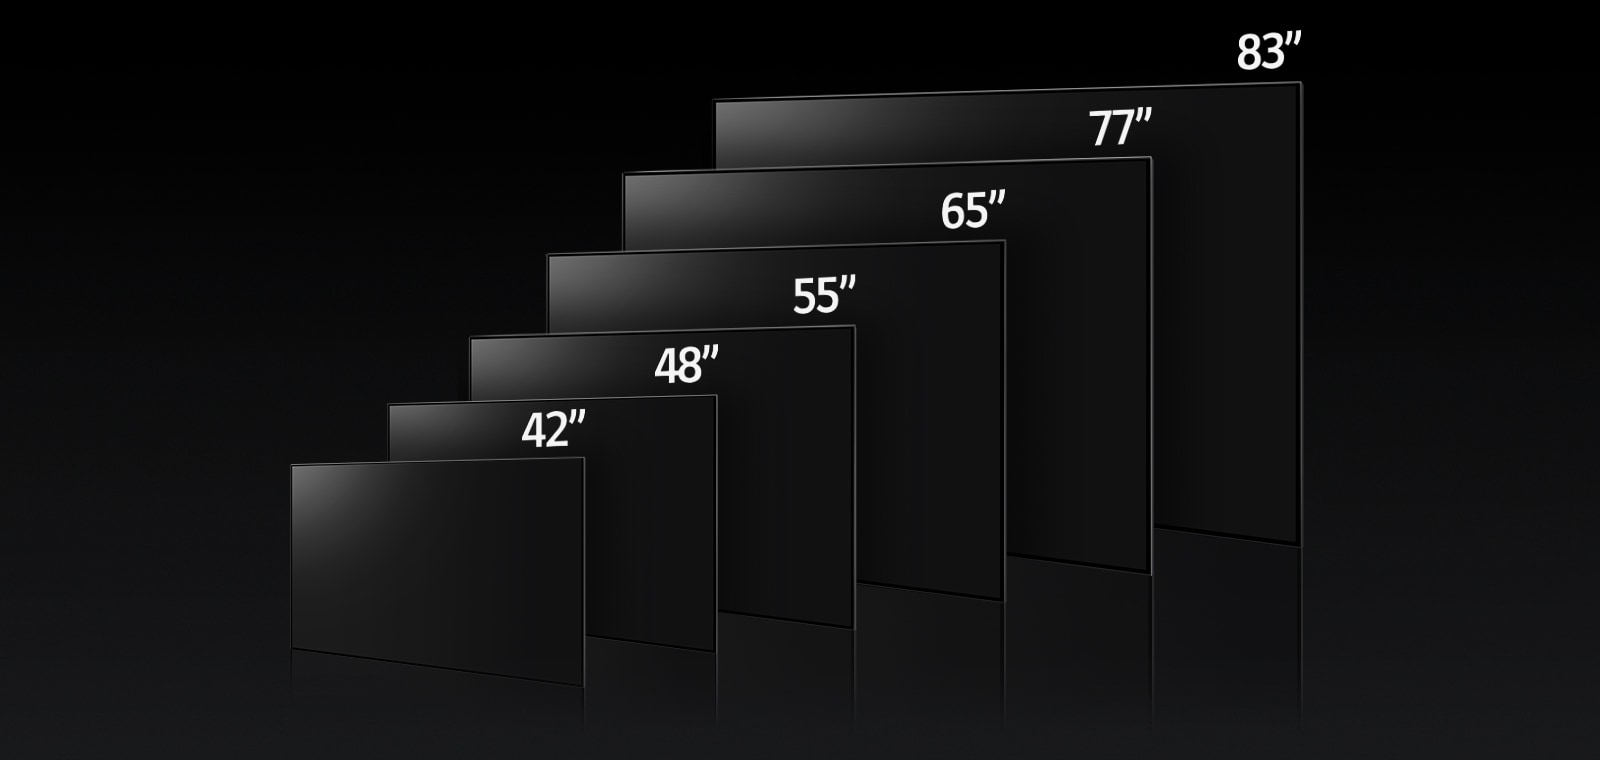 Slika, ki primerja različne velikosti televizorja LG OLED C3, prikazuje 42", 48", 55", 65", 77" in 83".